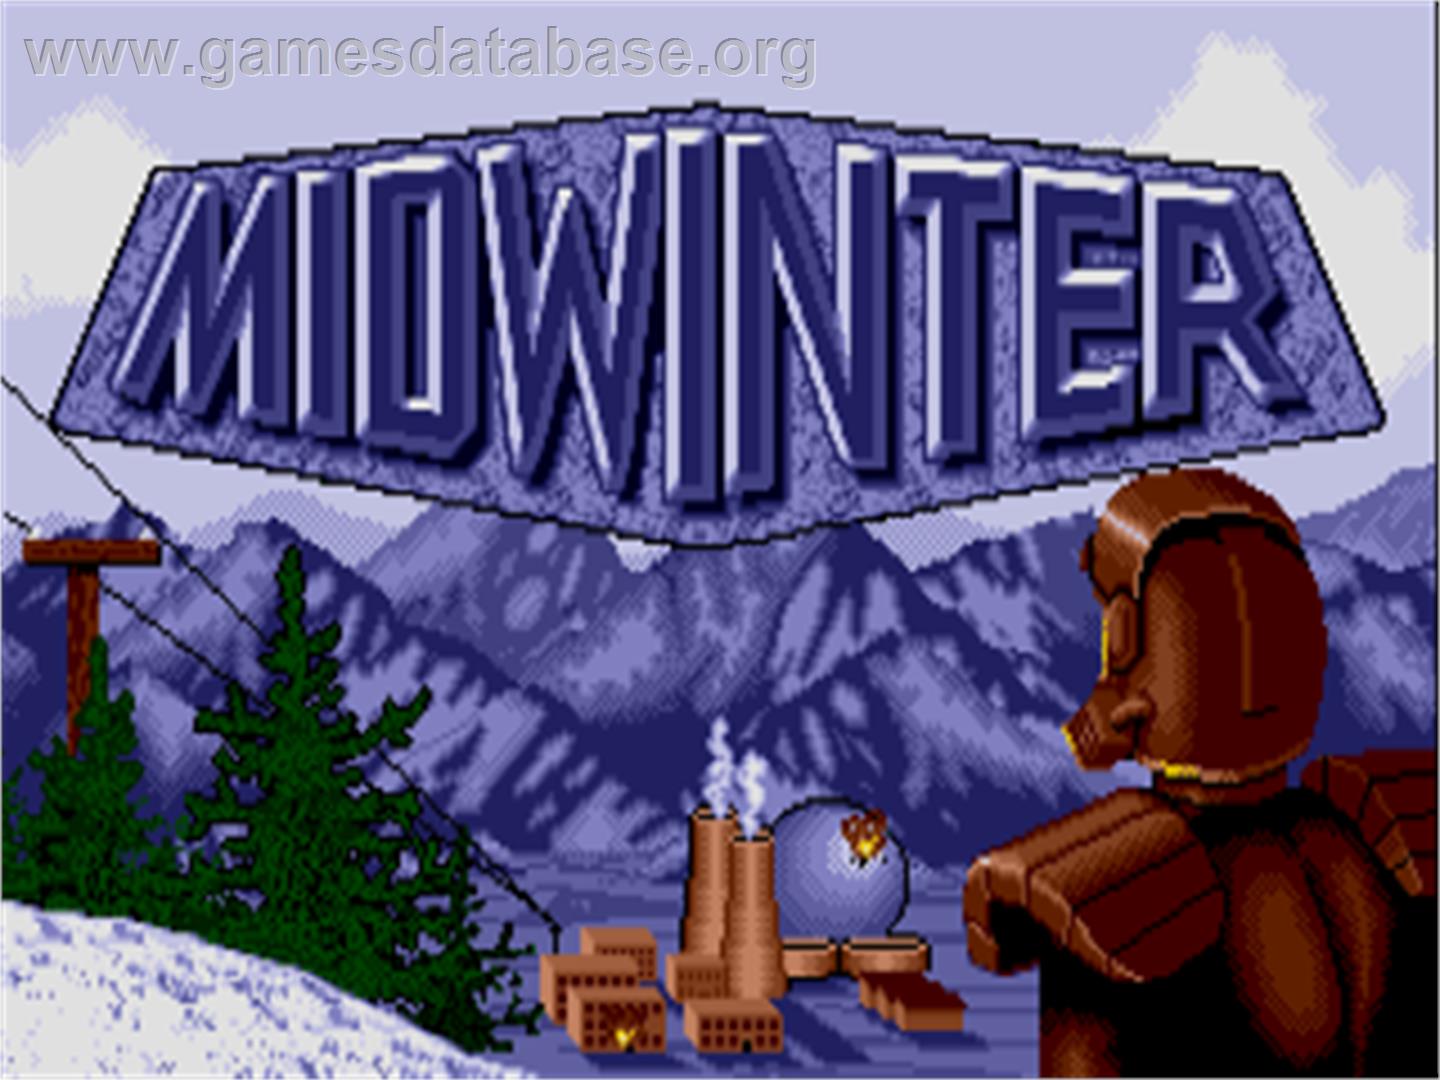 Midwinter - Commodore Amiga - Artwork - Title Screen